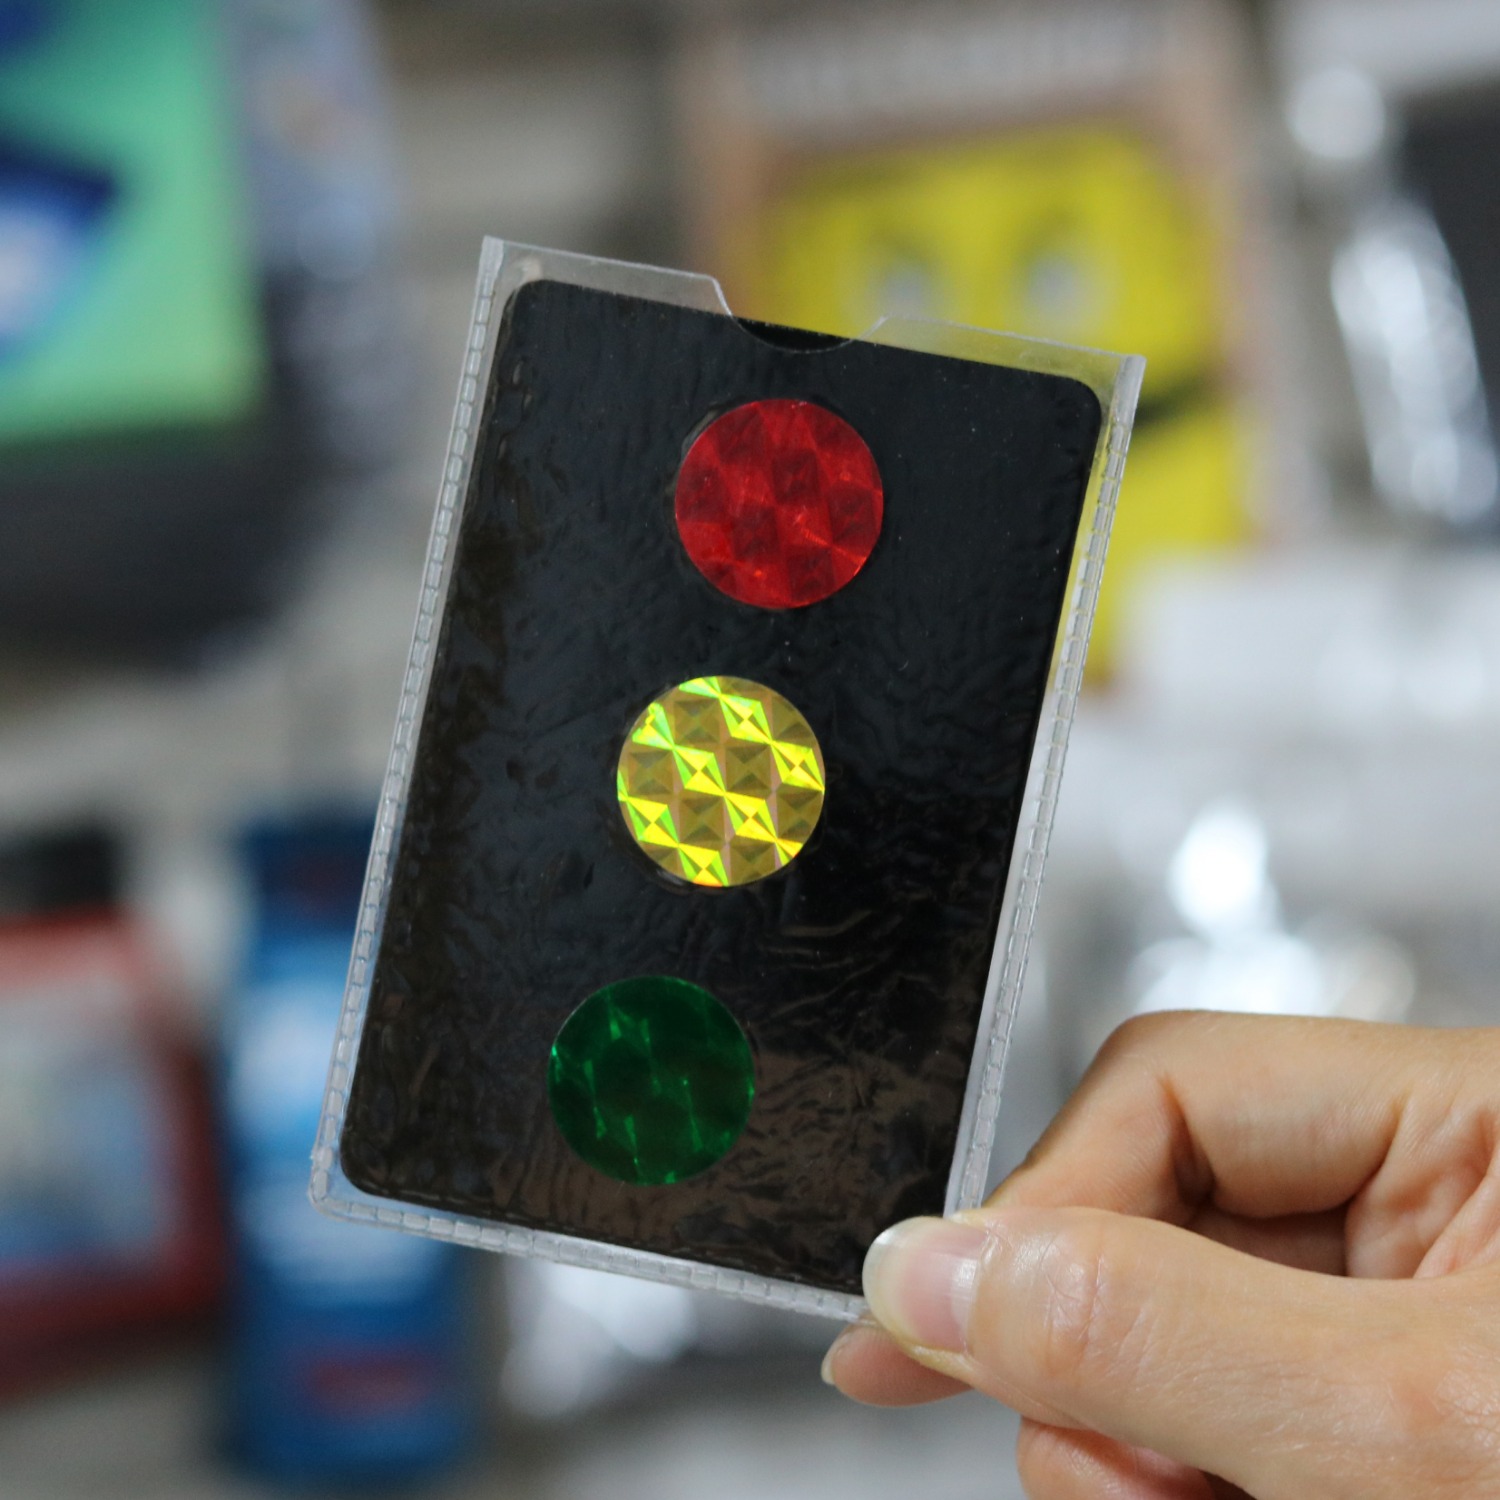 magic Stop Light Cards(신호등카드) 초록색 신호등 그림을 순간이동 시키는 마술입니다.